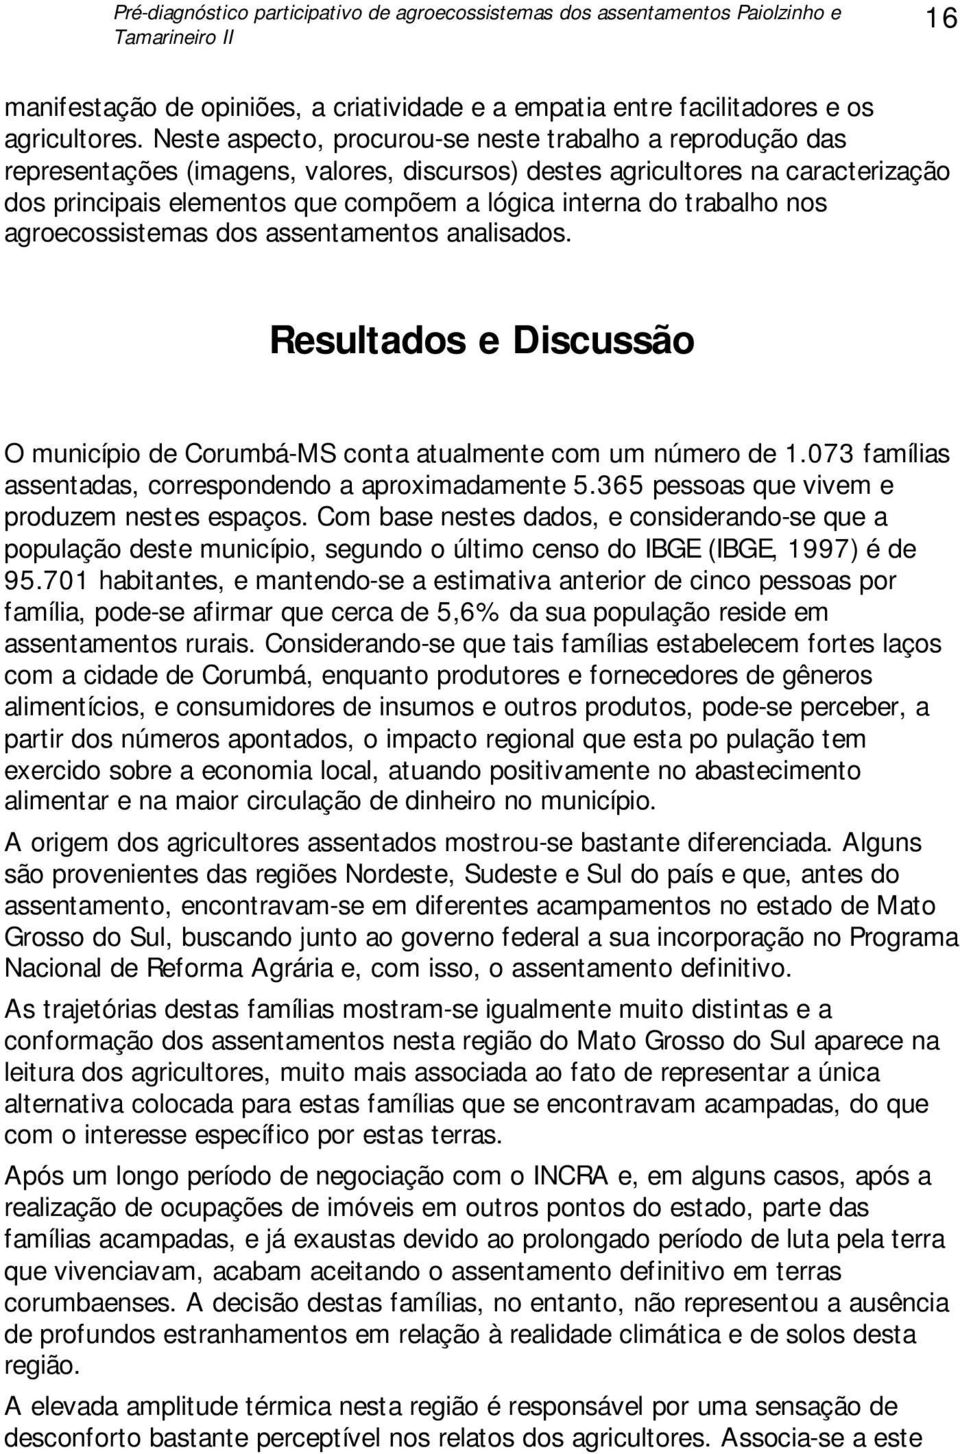 trabalho nos agroecossistemas dos assentamentos analisados. Resultados e Discussão O município de Corumbá-MS conta atualmente com um número de 1.